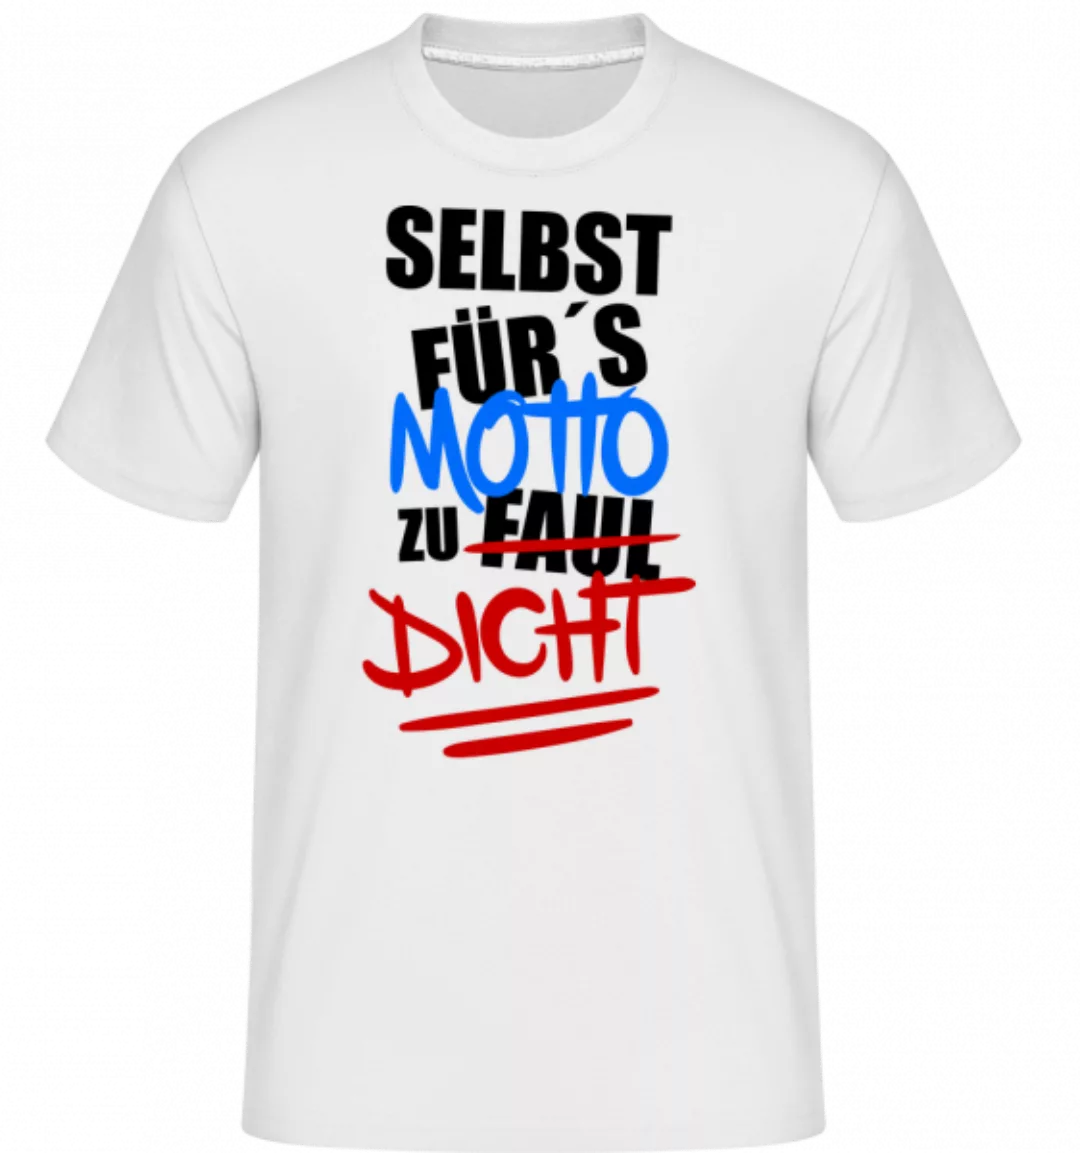 Selbst Für's Motto Zu Dicht · Shirtinator Männer T-Shirt günstig online kaufen